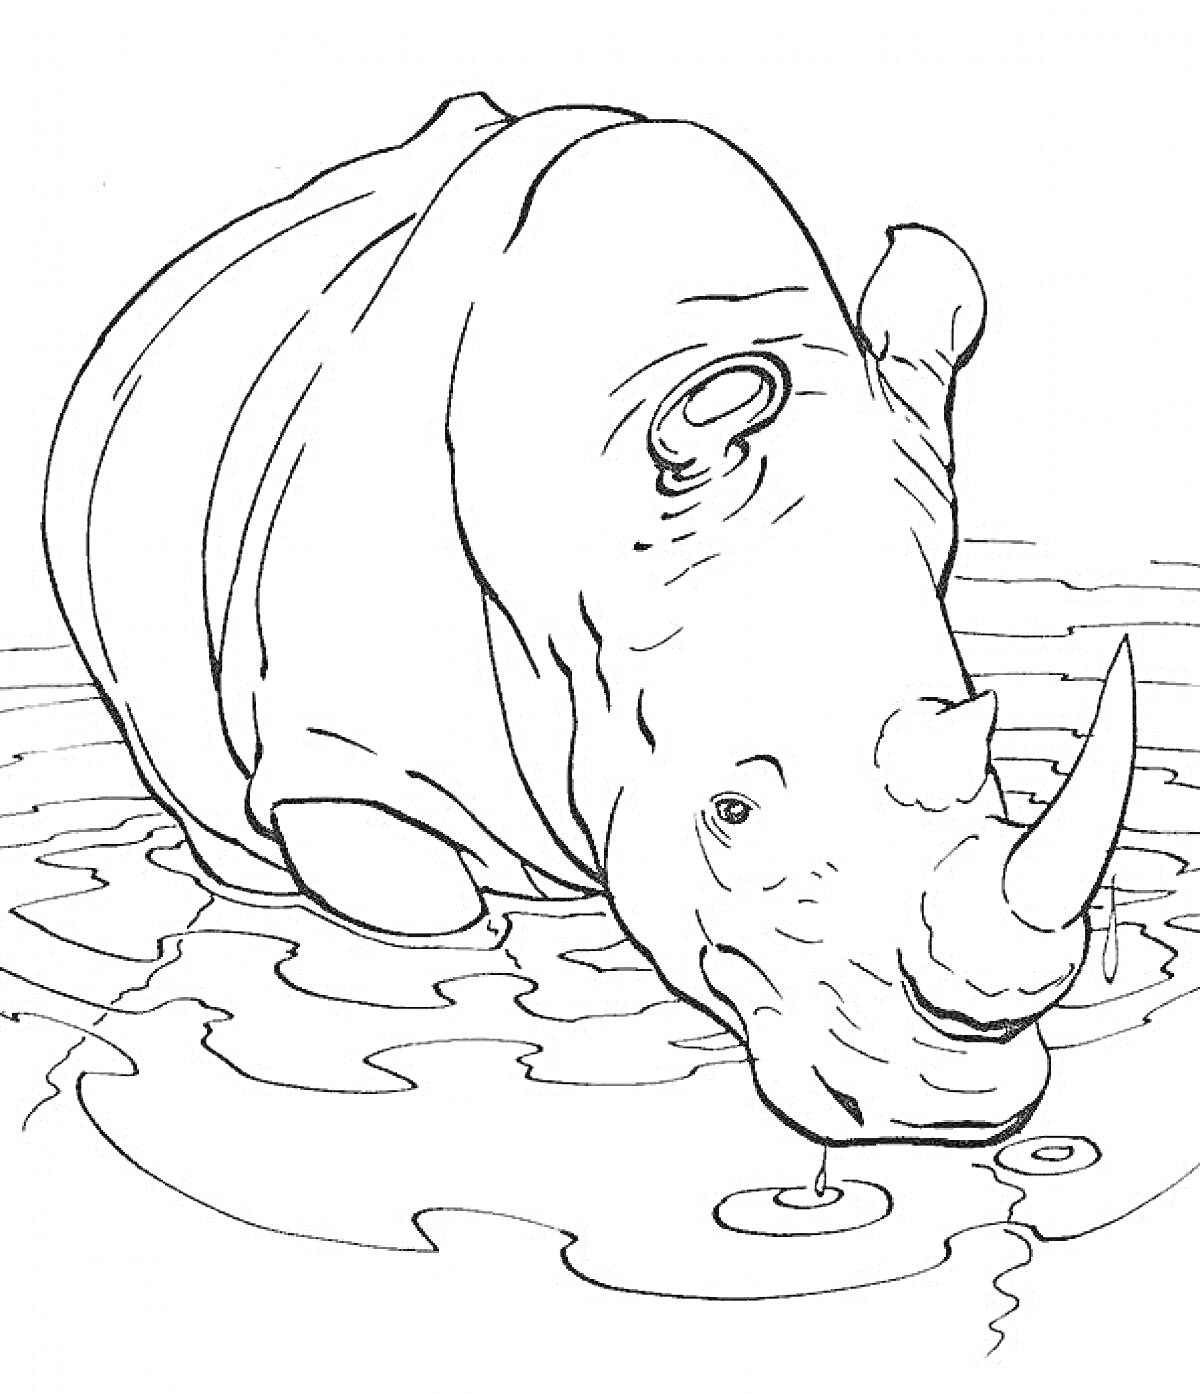 Носорог пьет воду в озере